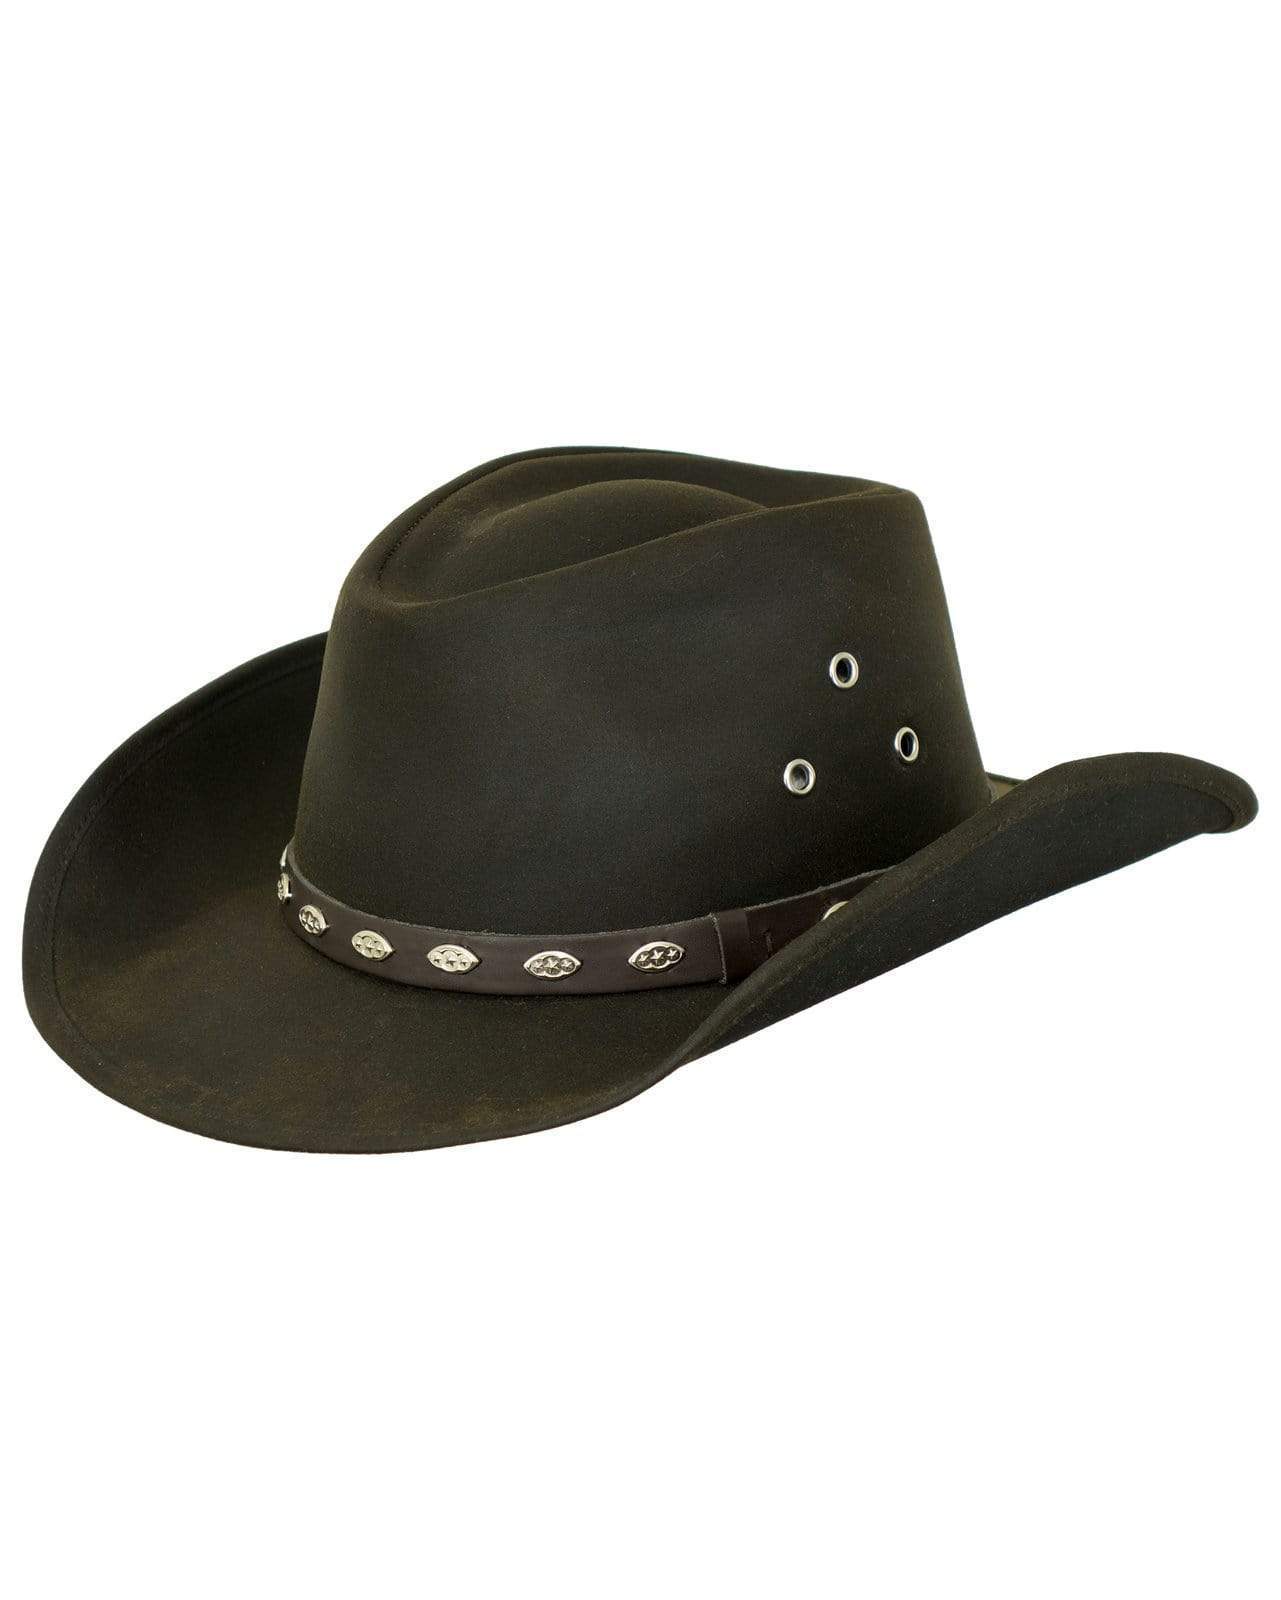 Outback Trading Badlands Oilskin Hat Brown / Large